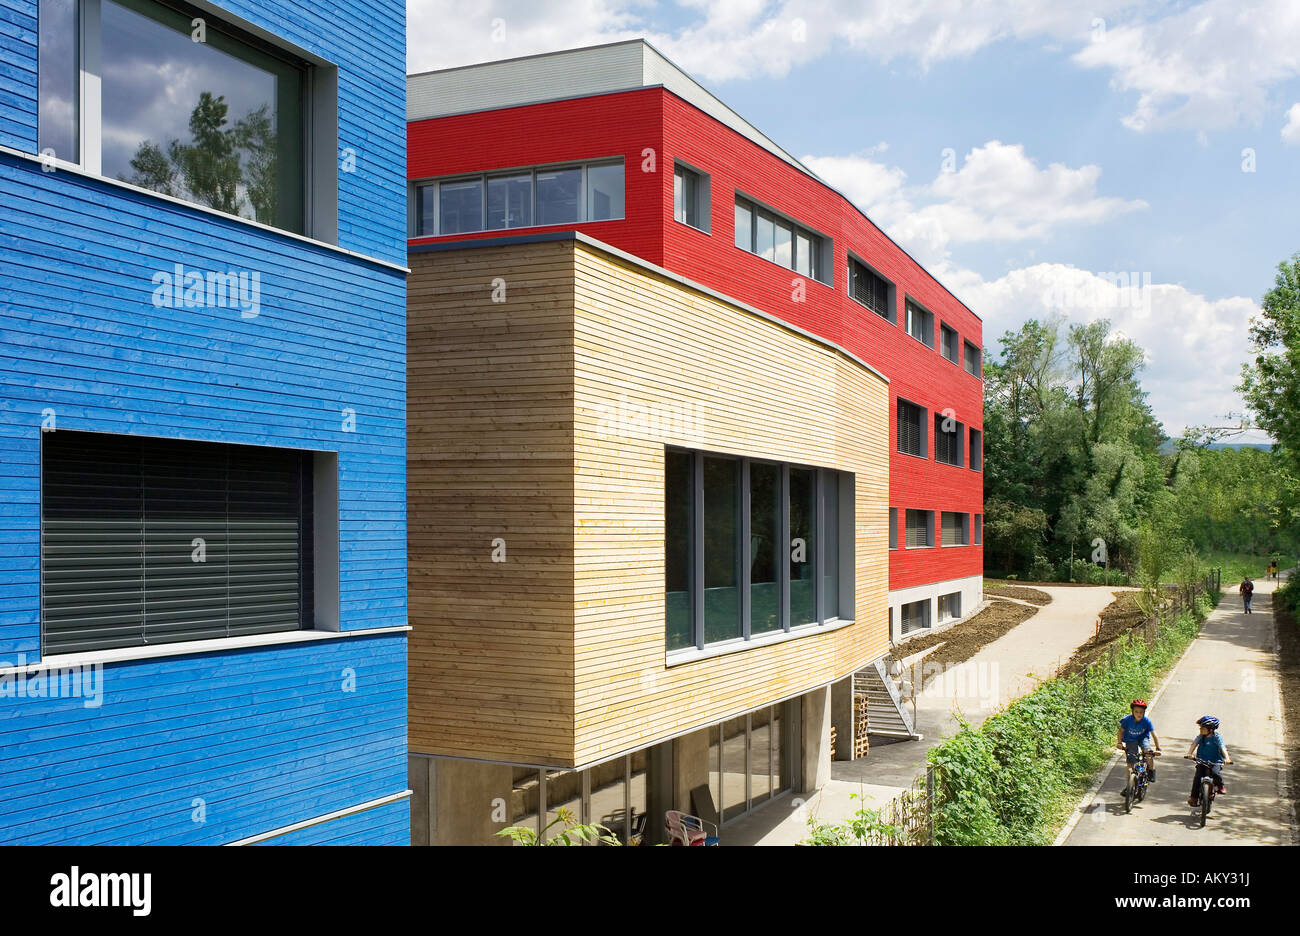 Buildings of the Company Weleda, Arlesheim, Basel-Landschaft, Switzerland  Stock Photo - Alamy